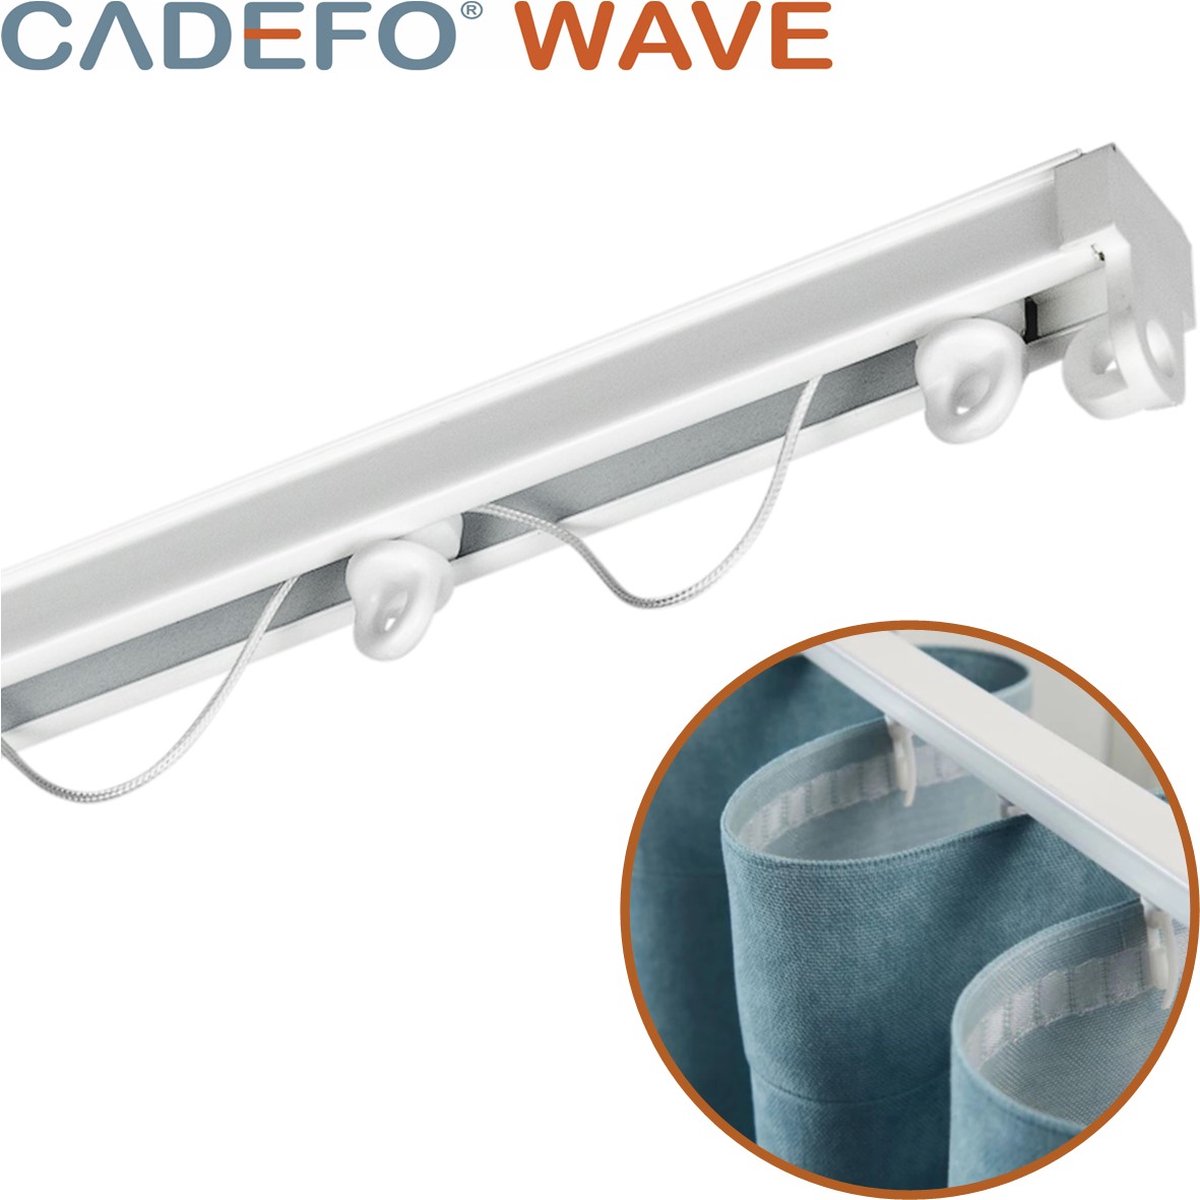 CADEFO WAVE (251 - 300 cm) Gordijnrails - Compleet op maat! - UIT 1 STUK - Leverbaar tot 6 meter - Plafondbevestiging - Lengte 274 cm